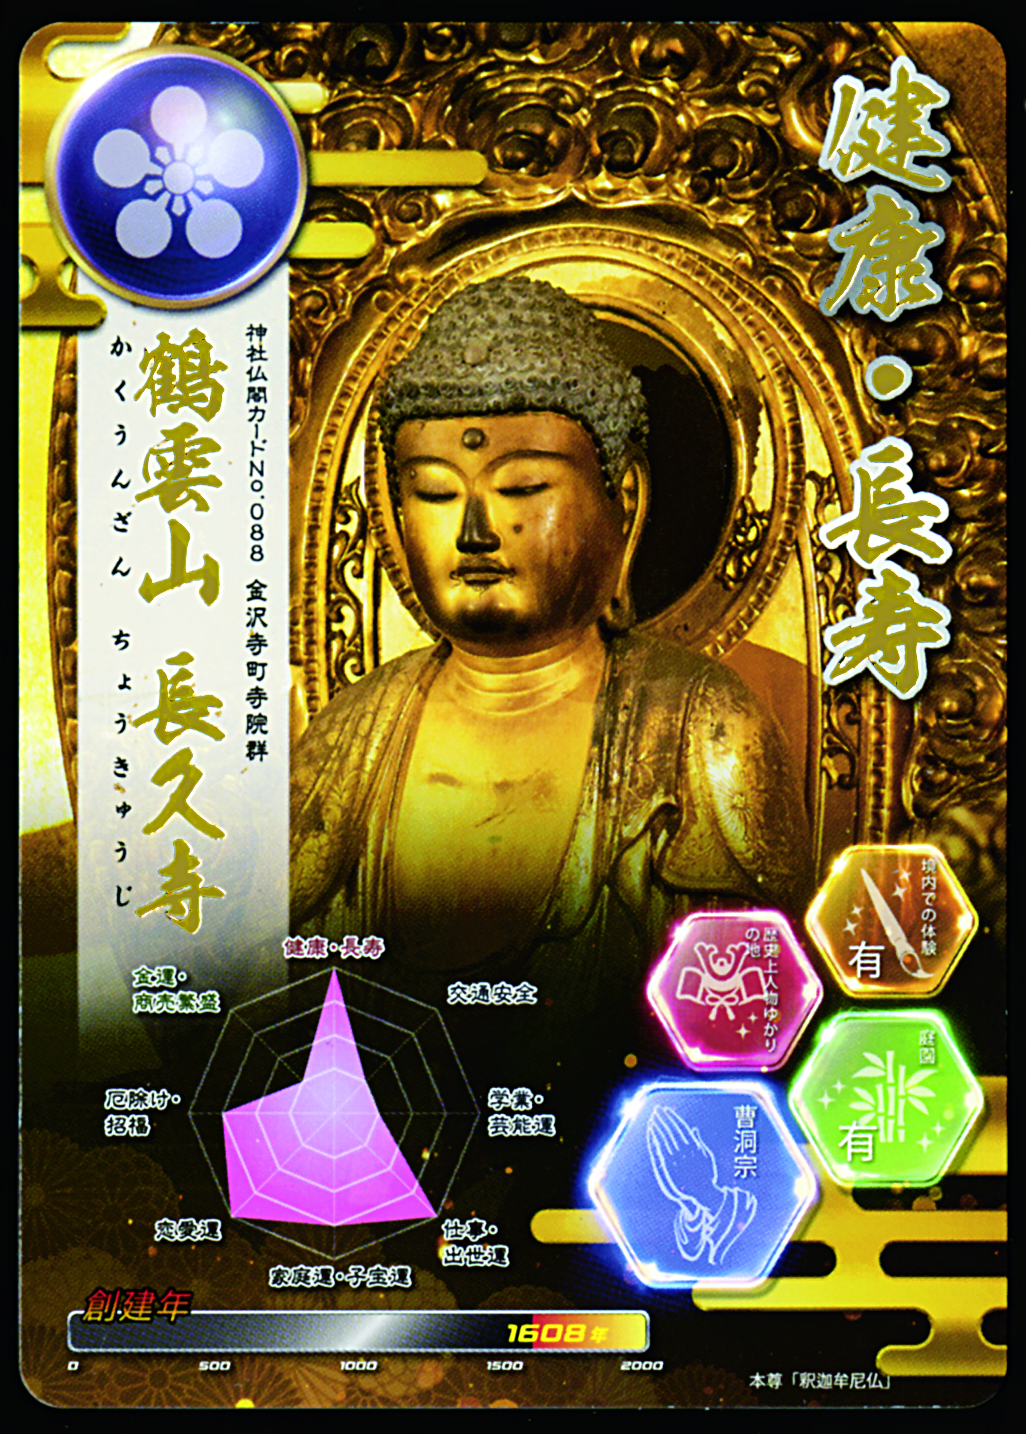 54寺社で神社仏閣カードを授与